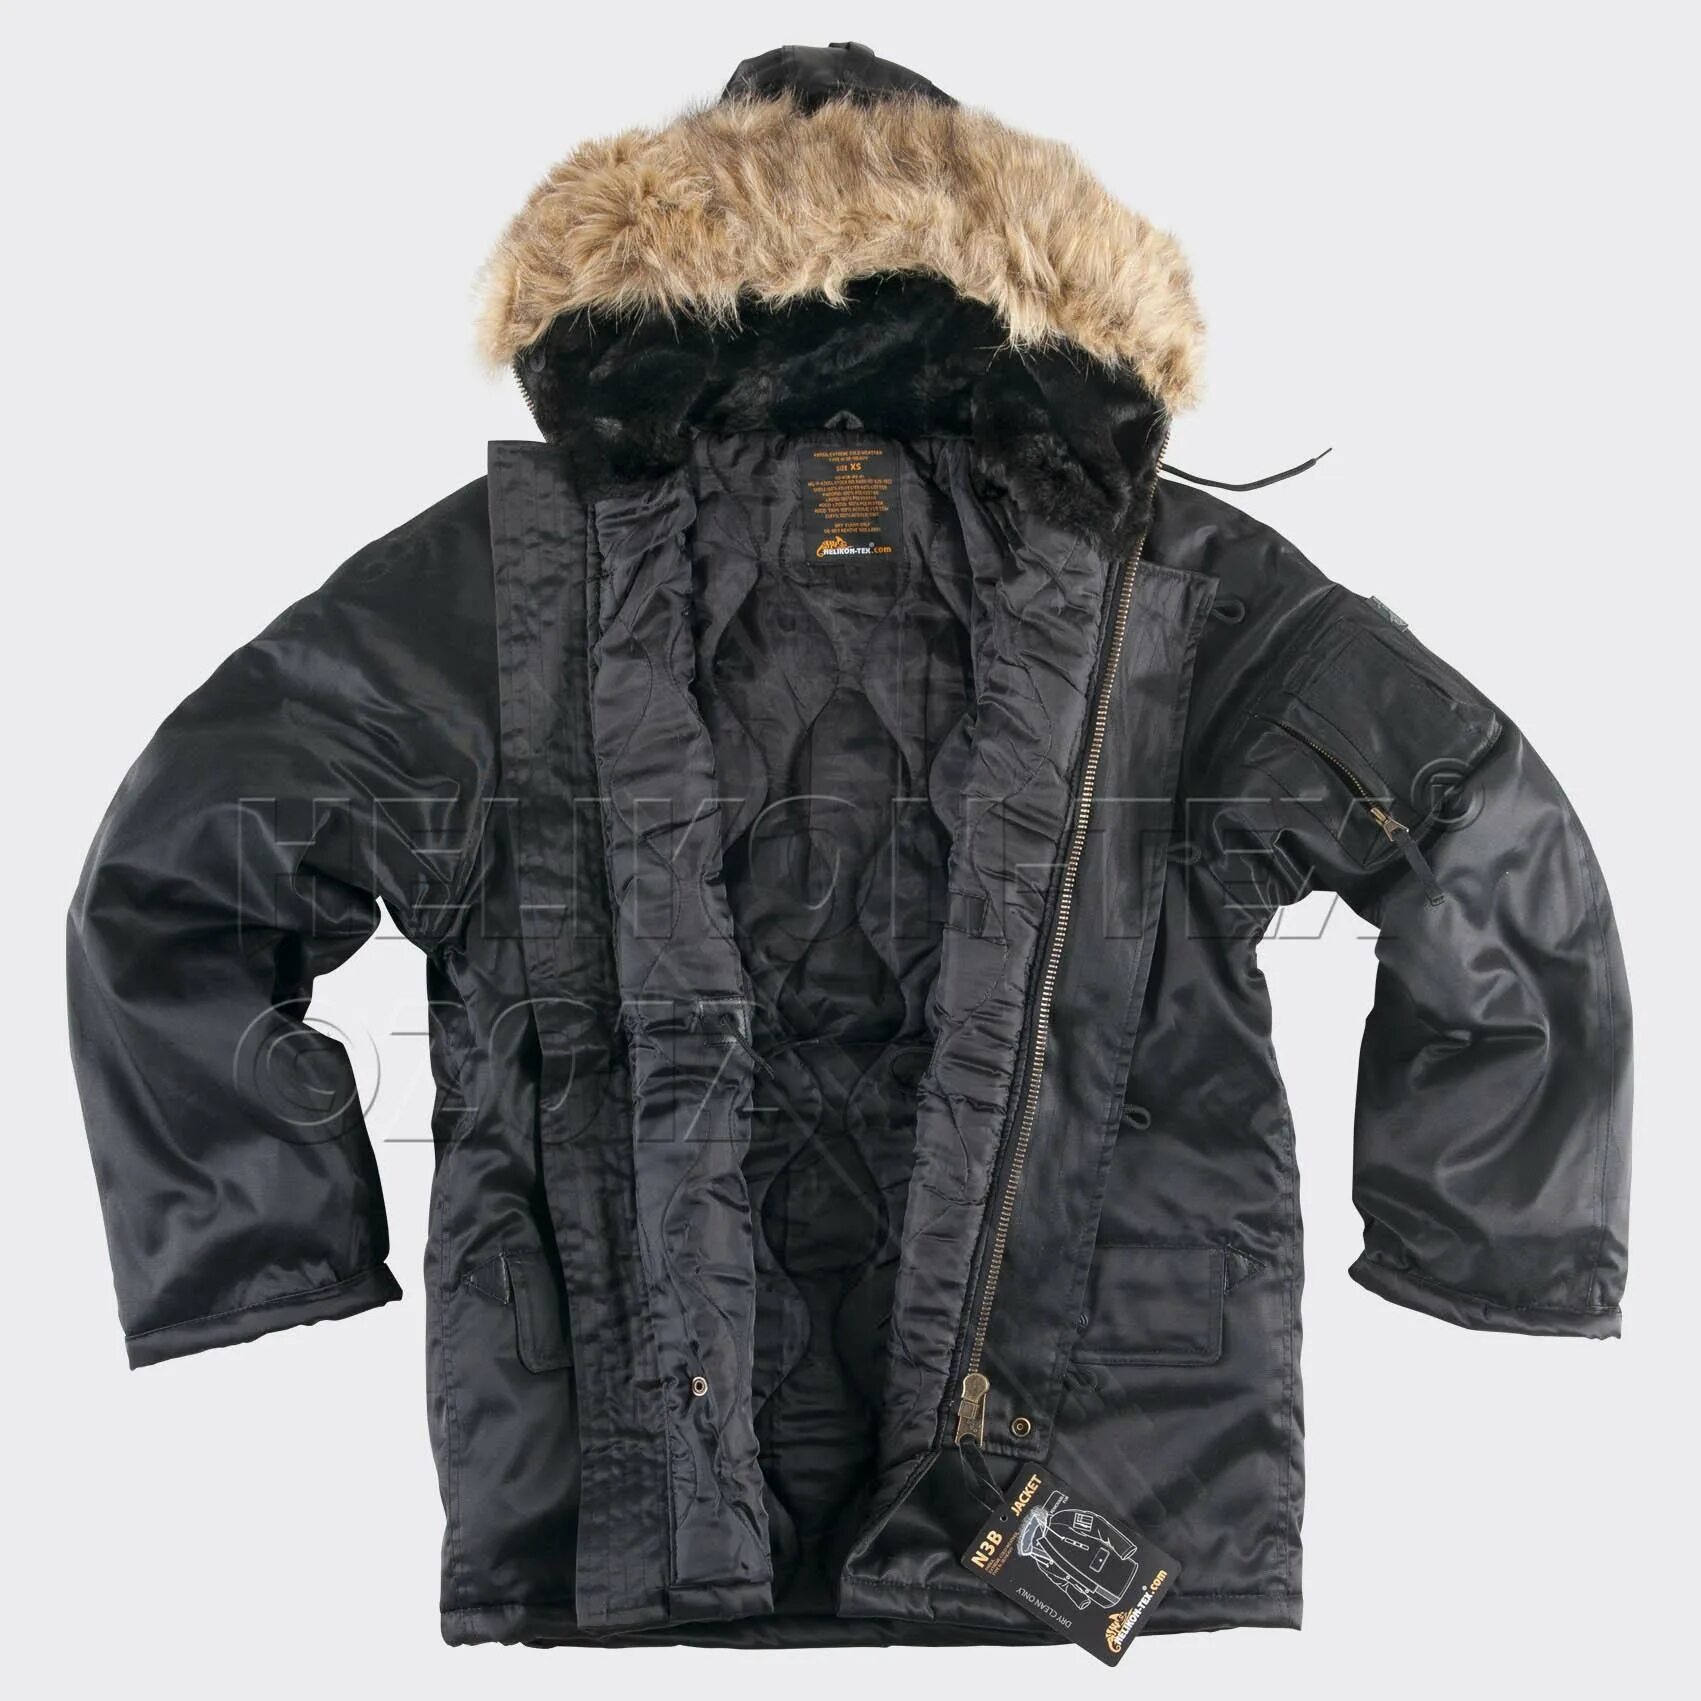 Аляски черные. Куртка Аляска n-3b. Куртка Аляска Хеликон. Parka extreme Cold weather Type n-3b n. Тактическая куртка Аляска.